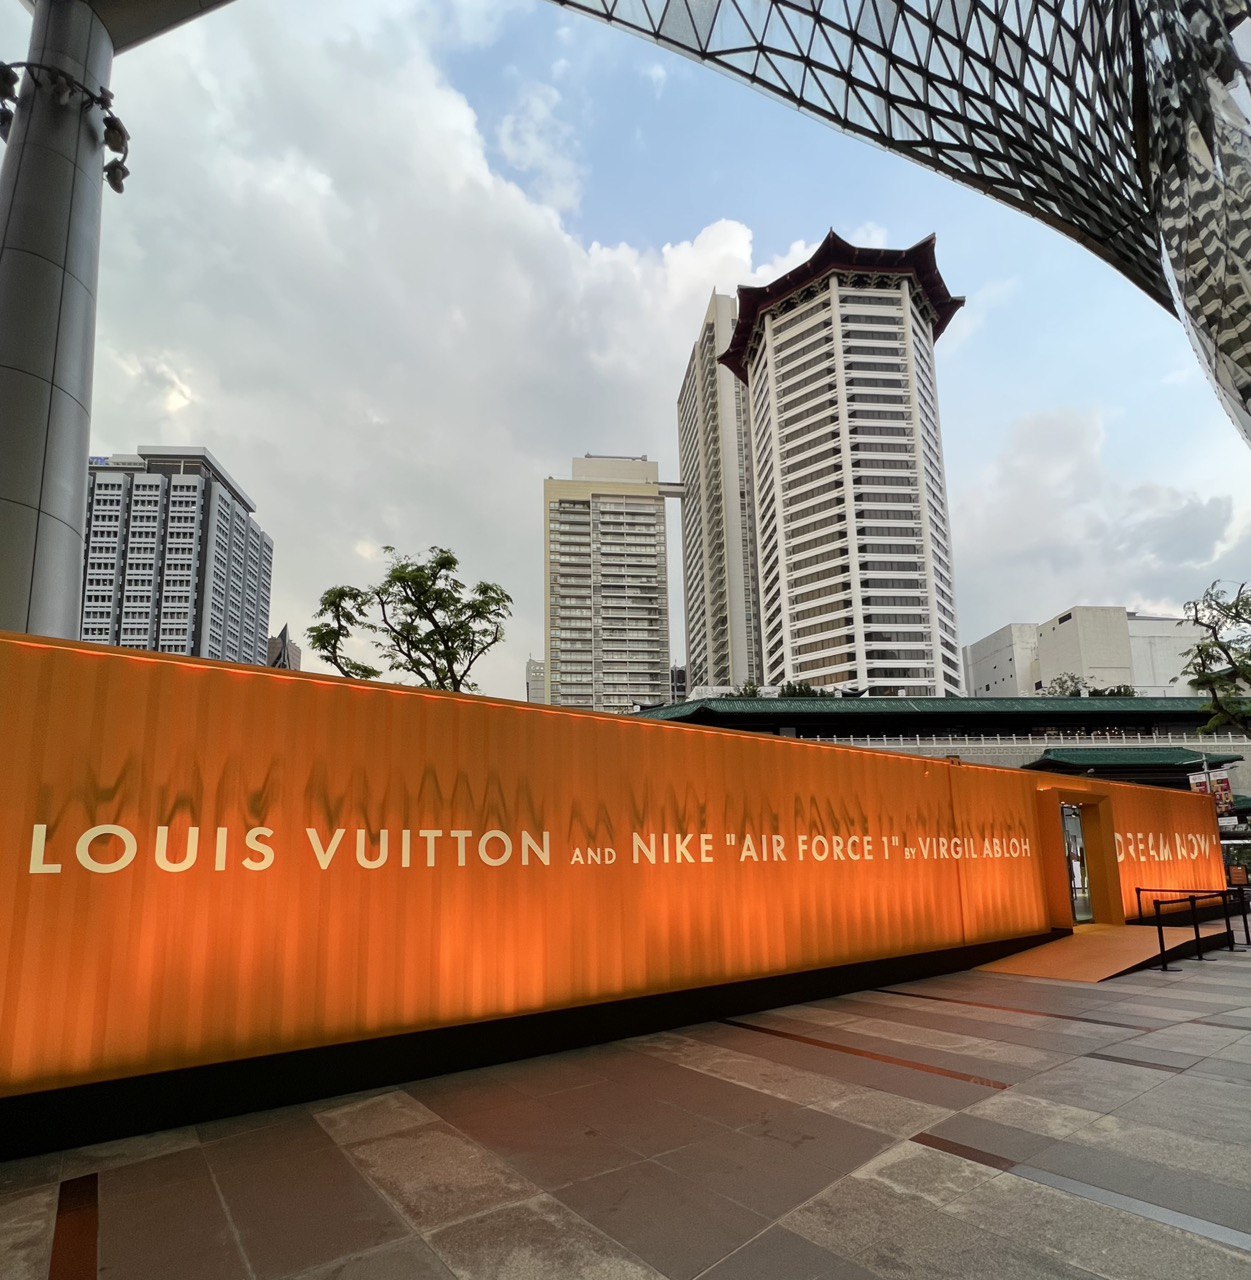 Virgil Abloh's Louis Vuitton x Nike Air Force 1 Collection Lands